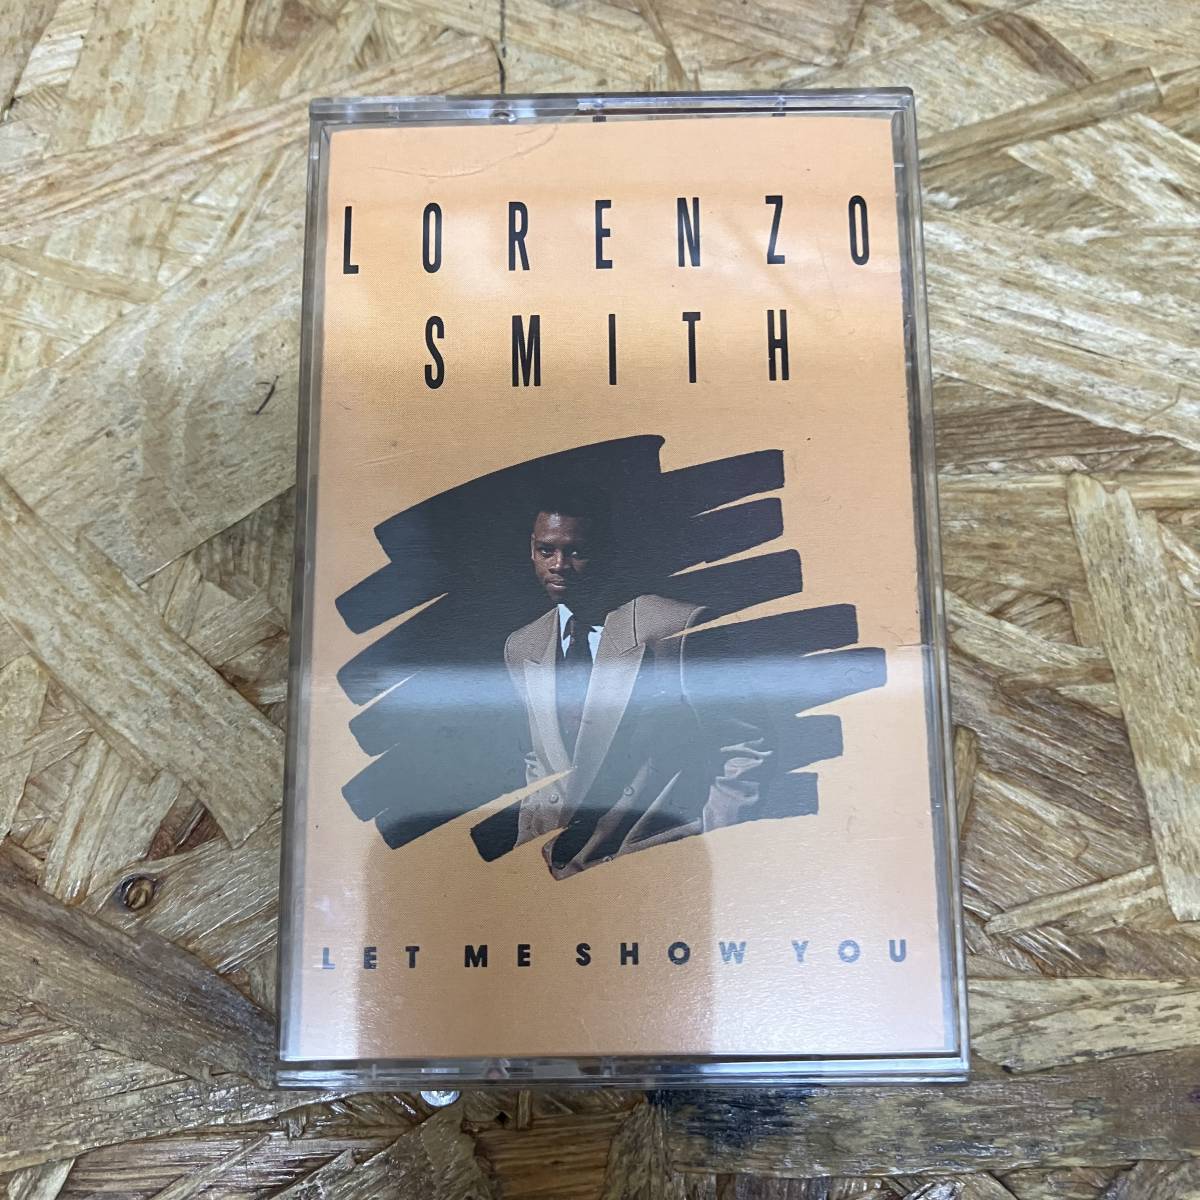 シHIPHOP,R&B LORENZO SMITH - LET ME SHOW YOU アルバム,名作! TAPE 中古品の画像1